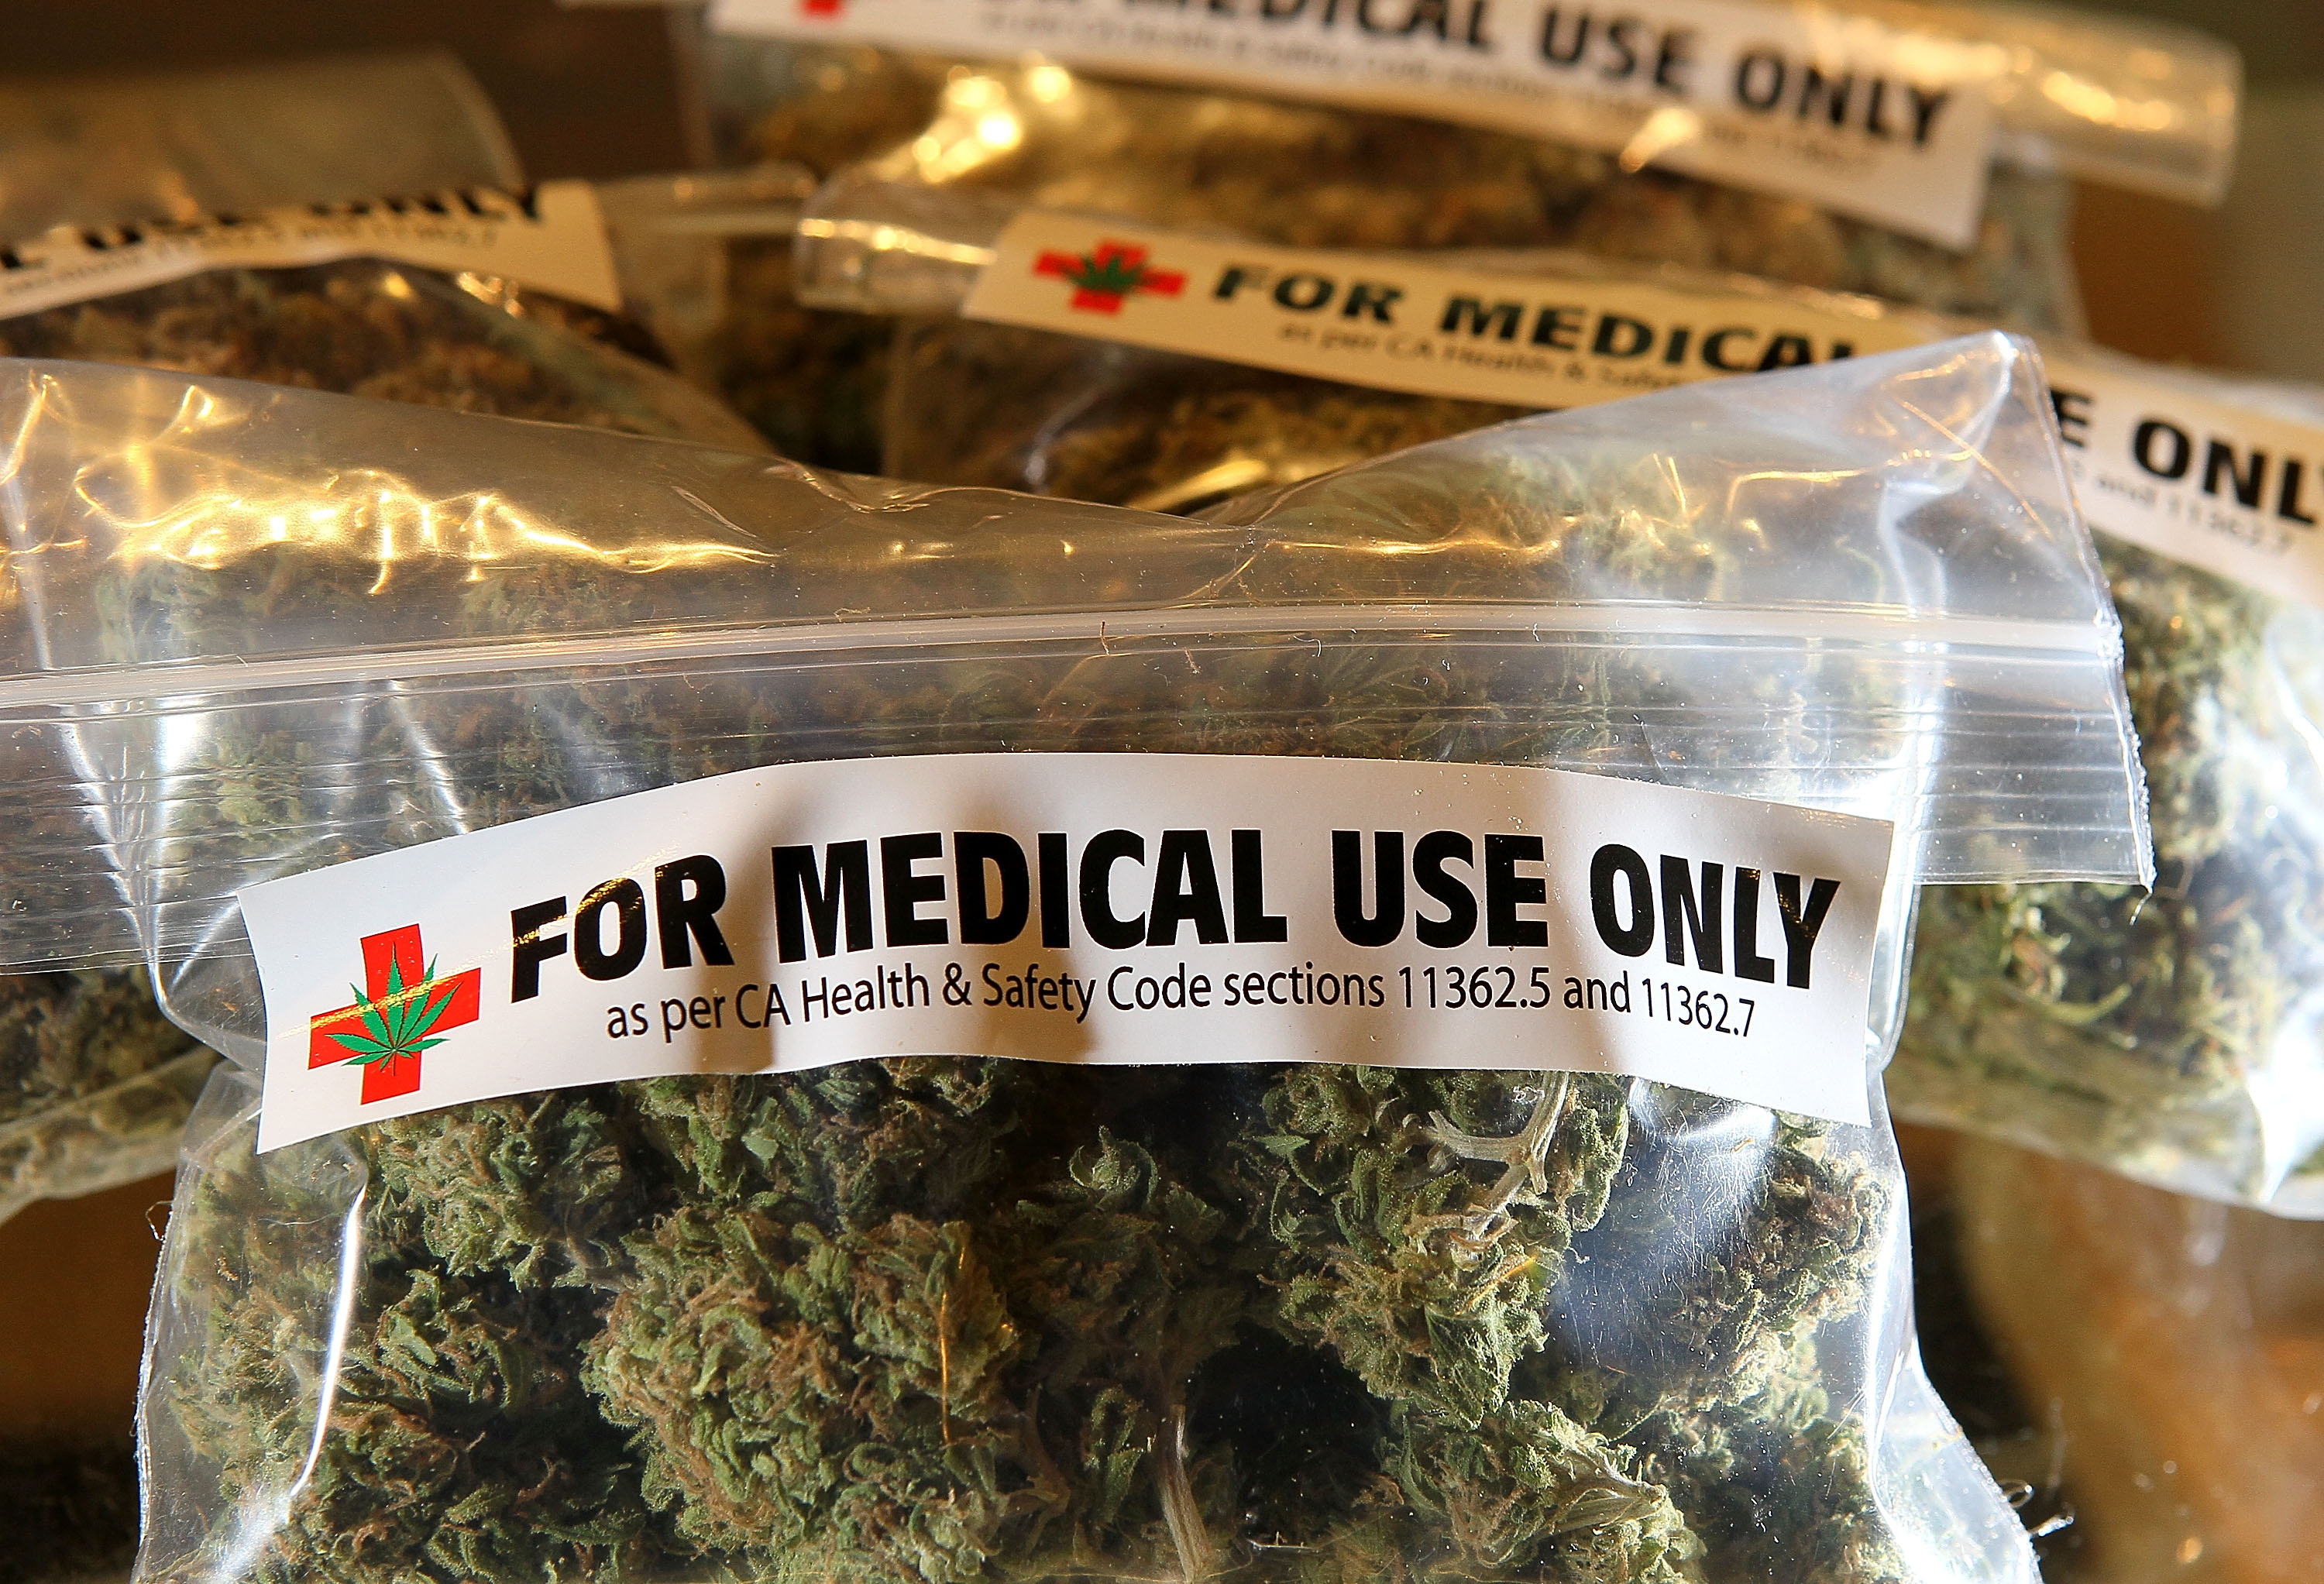 Medical marijuana's "benefits" often not backed by science - CBS News